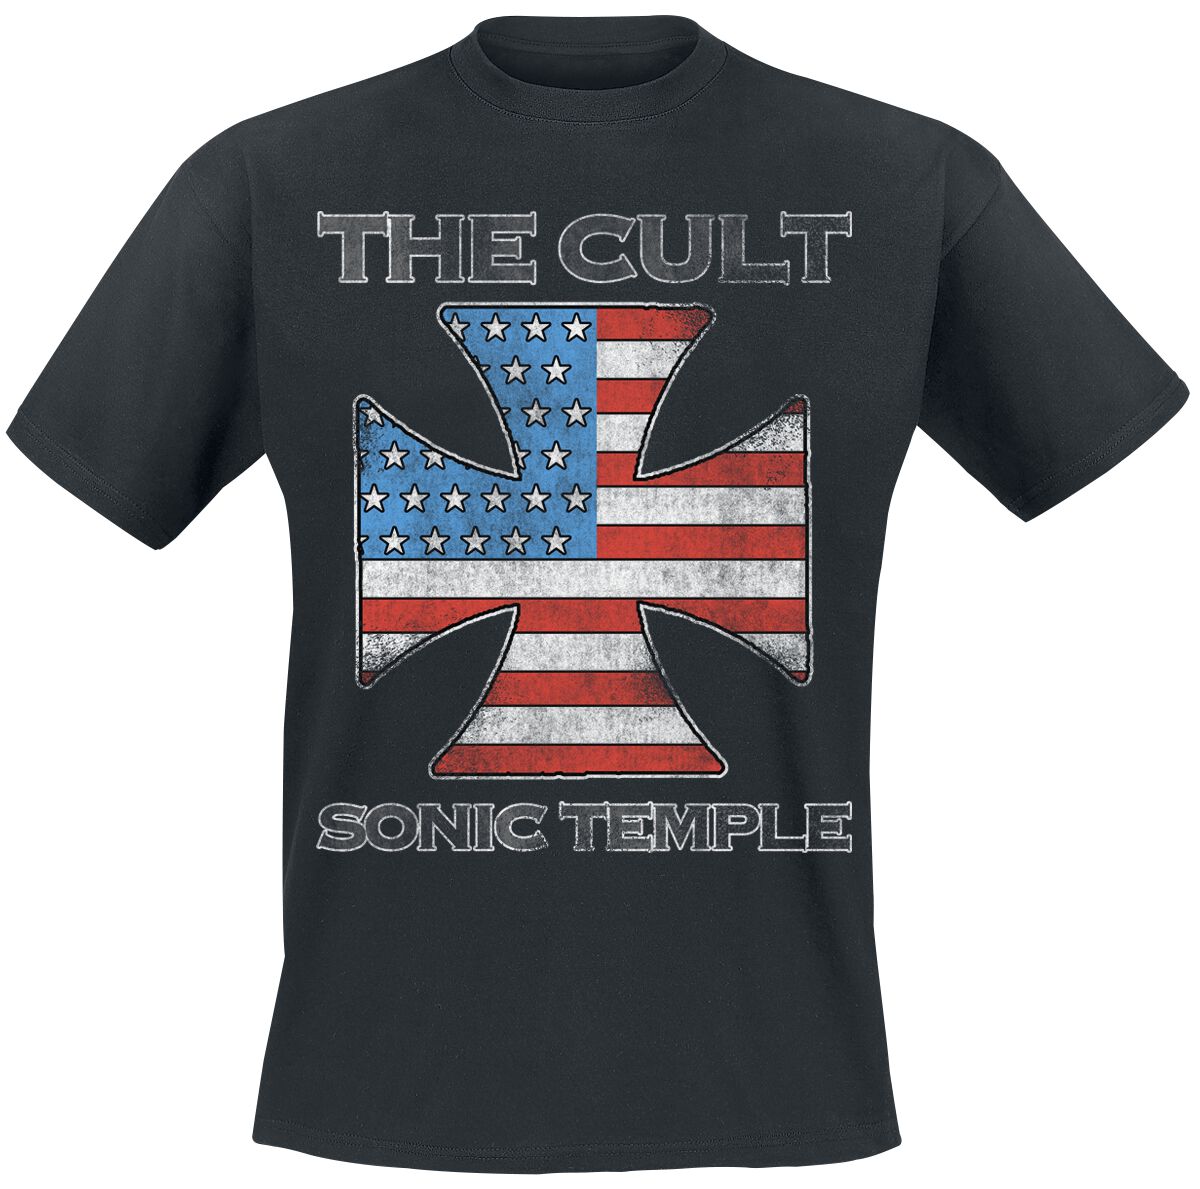 The Cult T-Shirt - US IRON CROSS - S bis 4XL - für Männer - Größe 4XL - schwarz  - Lizenziertes Merchandise!